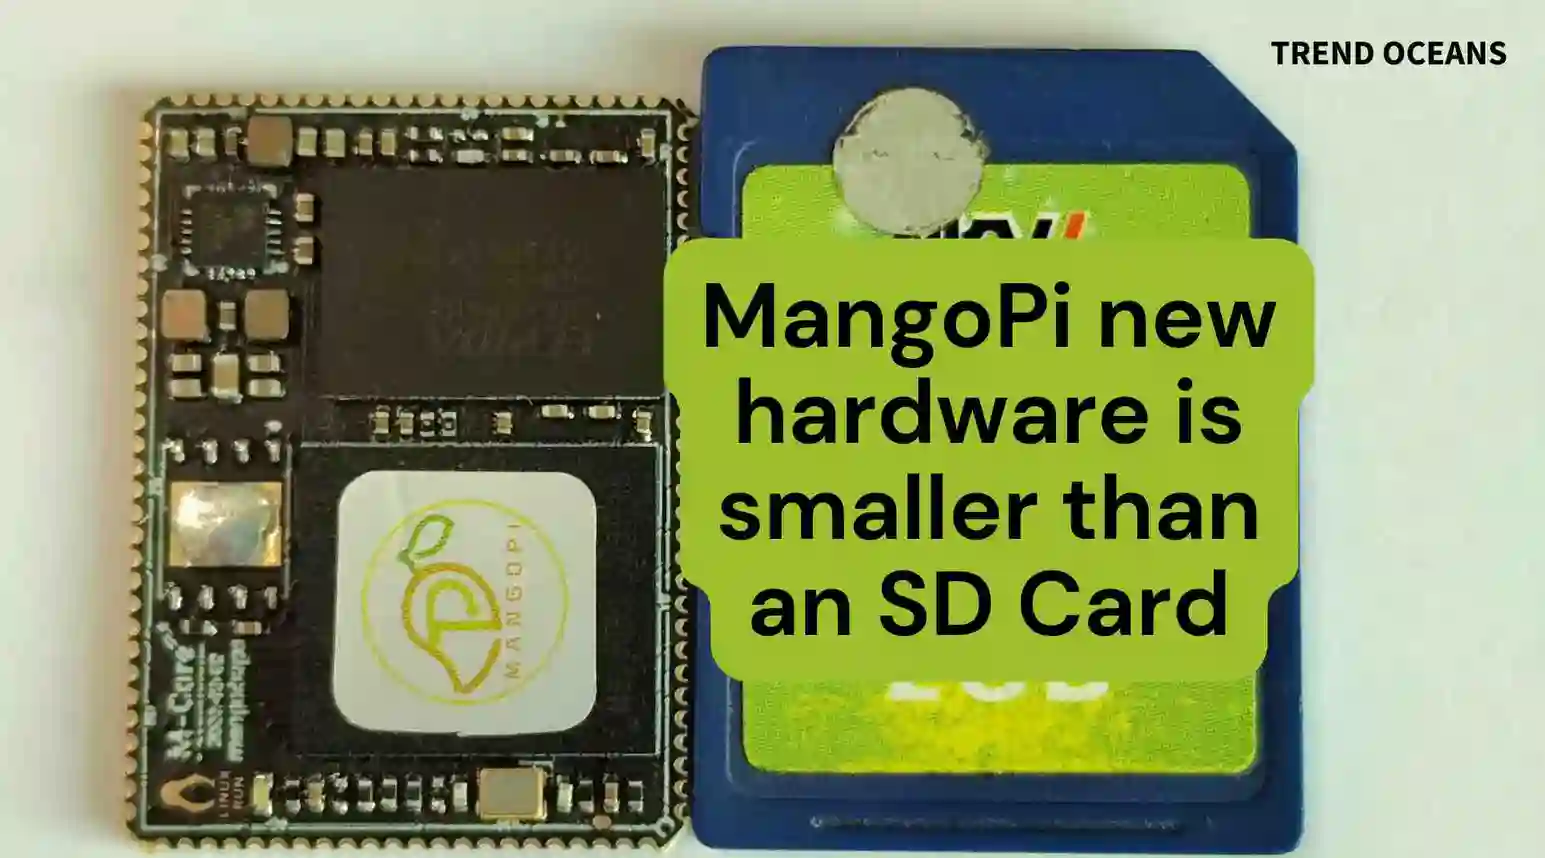 MangoPi new hardware